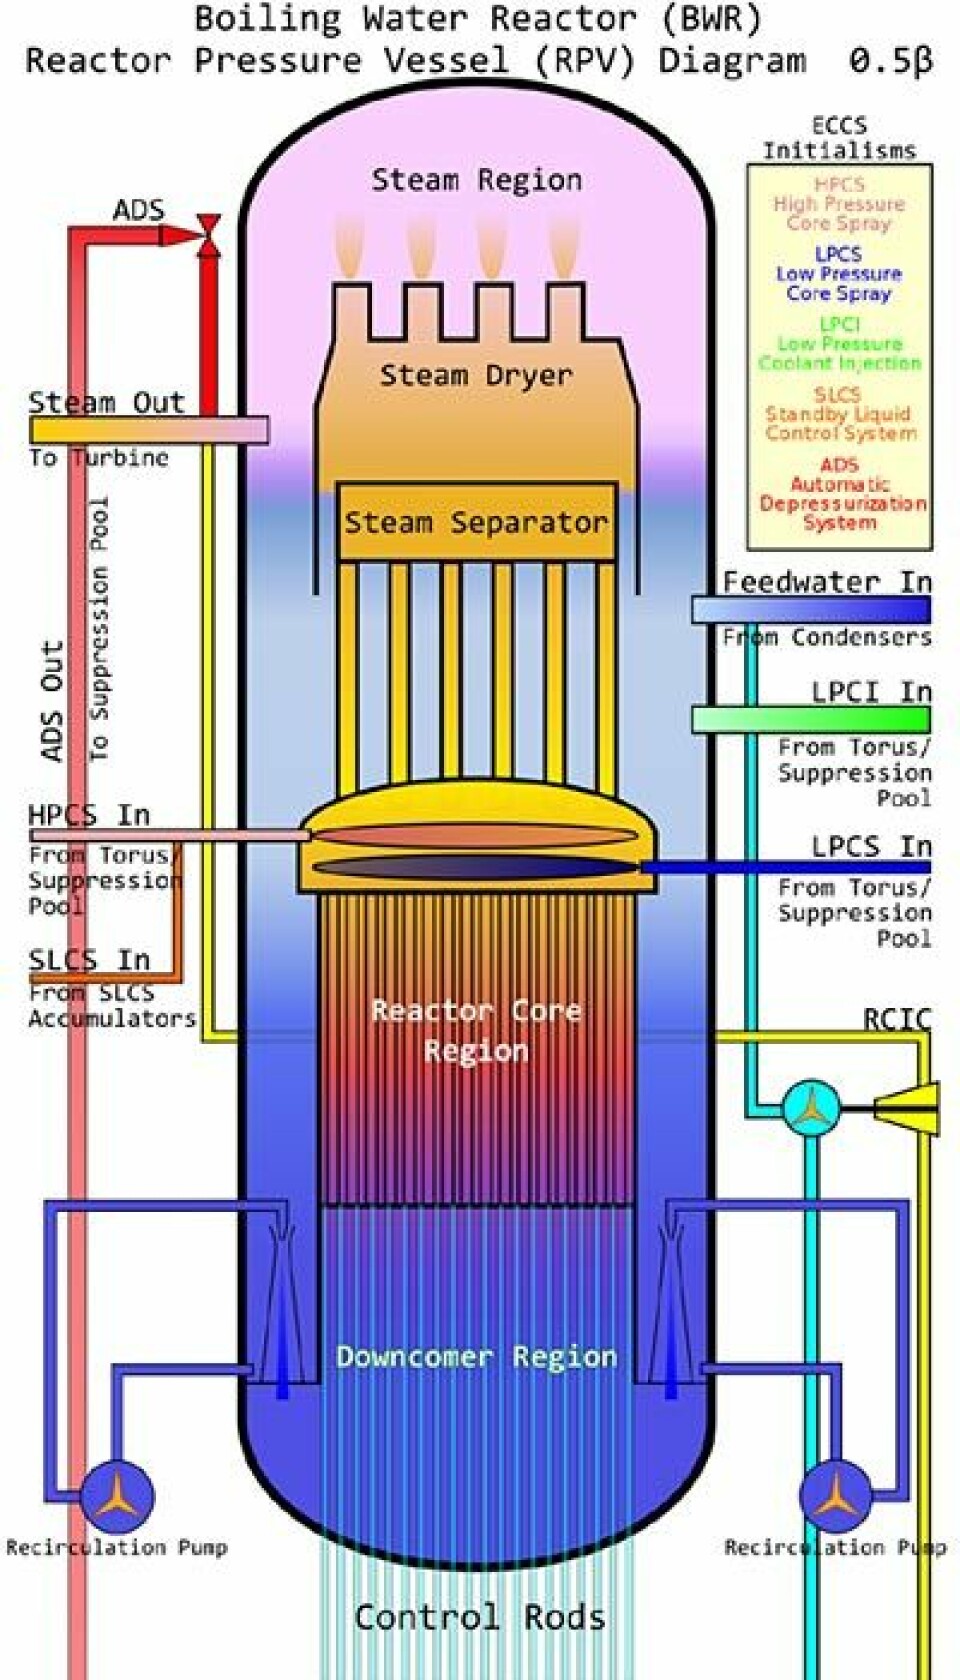 Reaktorene i Fukushima bruker vann som kjølevæske. Dette er en prinsippskisse av en slik reaktortype. Klikk på forstørrelsesglass for større bilde! (Figur: David C. Synnott, Creative Commons, se lisens)